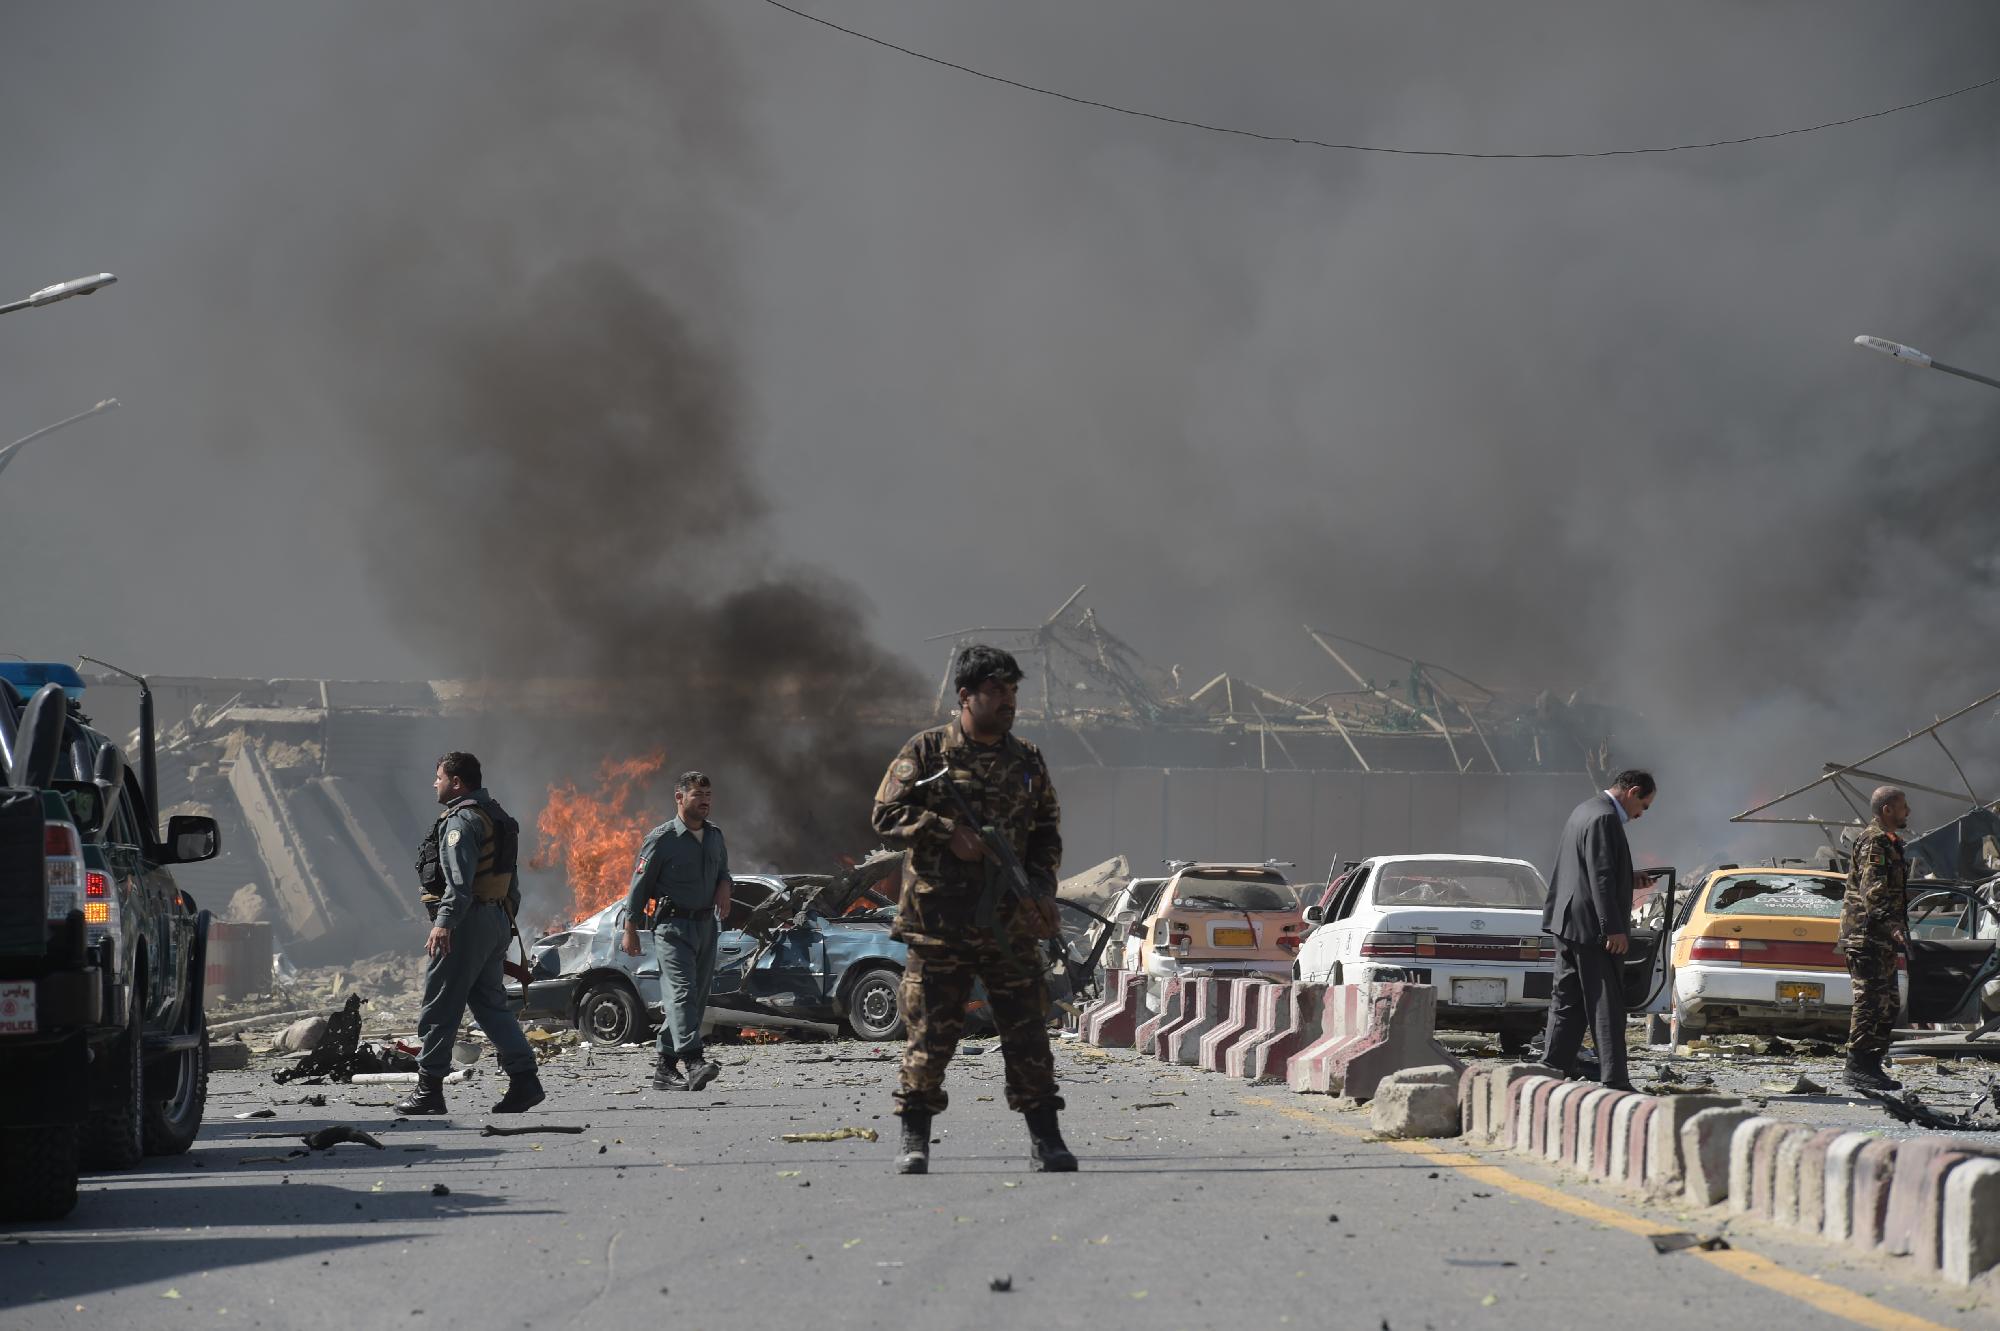 Merénylet Kabulban: Egy román katona is életét vesztette csütörtökön